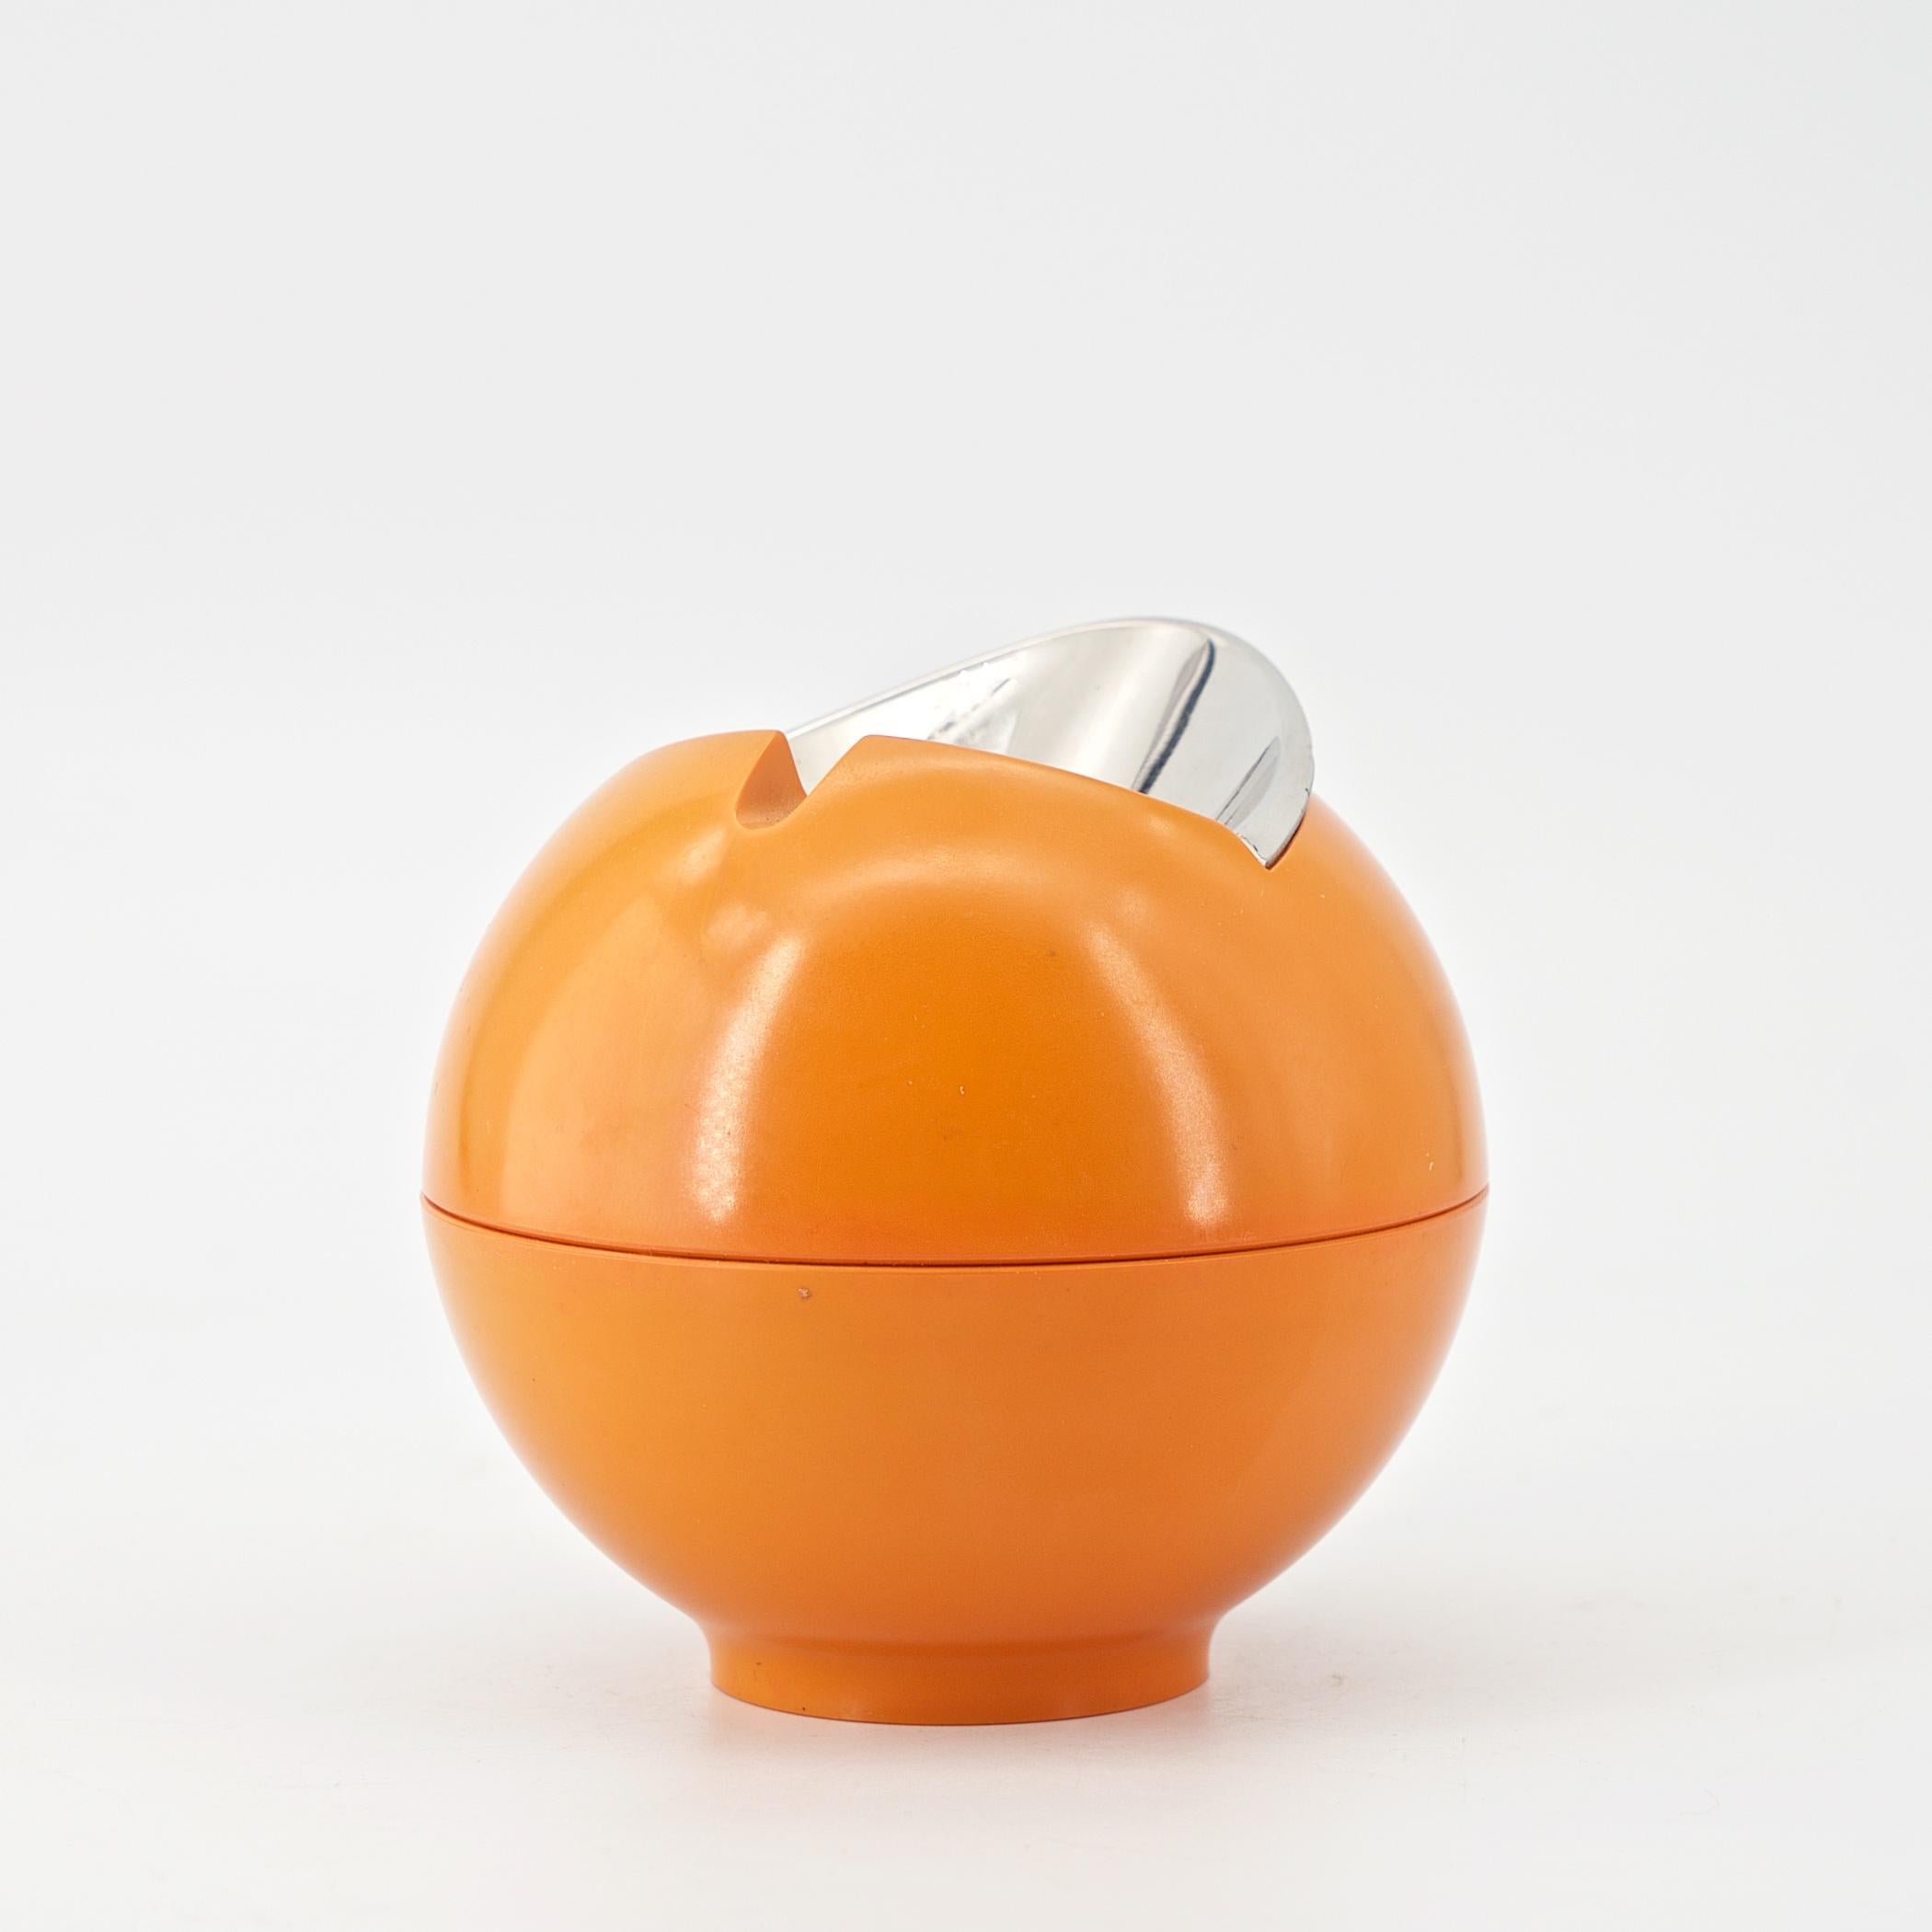 Un merveilleux cendrier sculptural orange de l'ère allemande des années 1960 de la domination de la fabrication des plastiques ABS. Décor plus difficile à trouver et à collectionner. Environ 3,5 pouces de large et de haut.